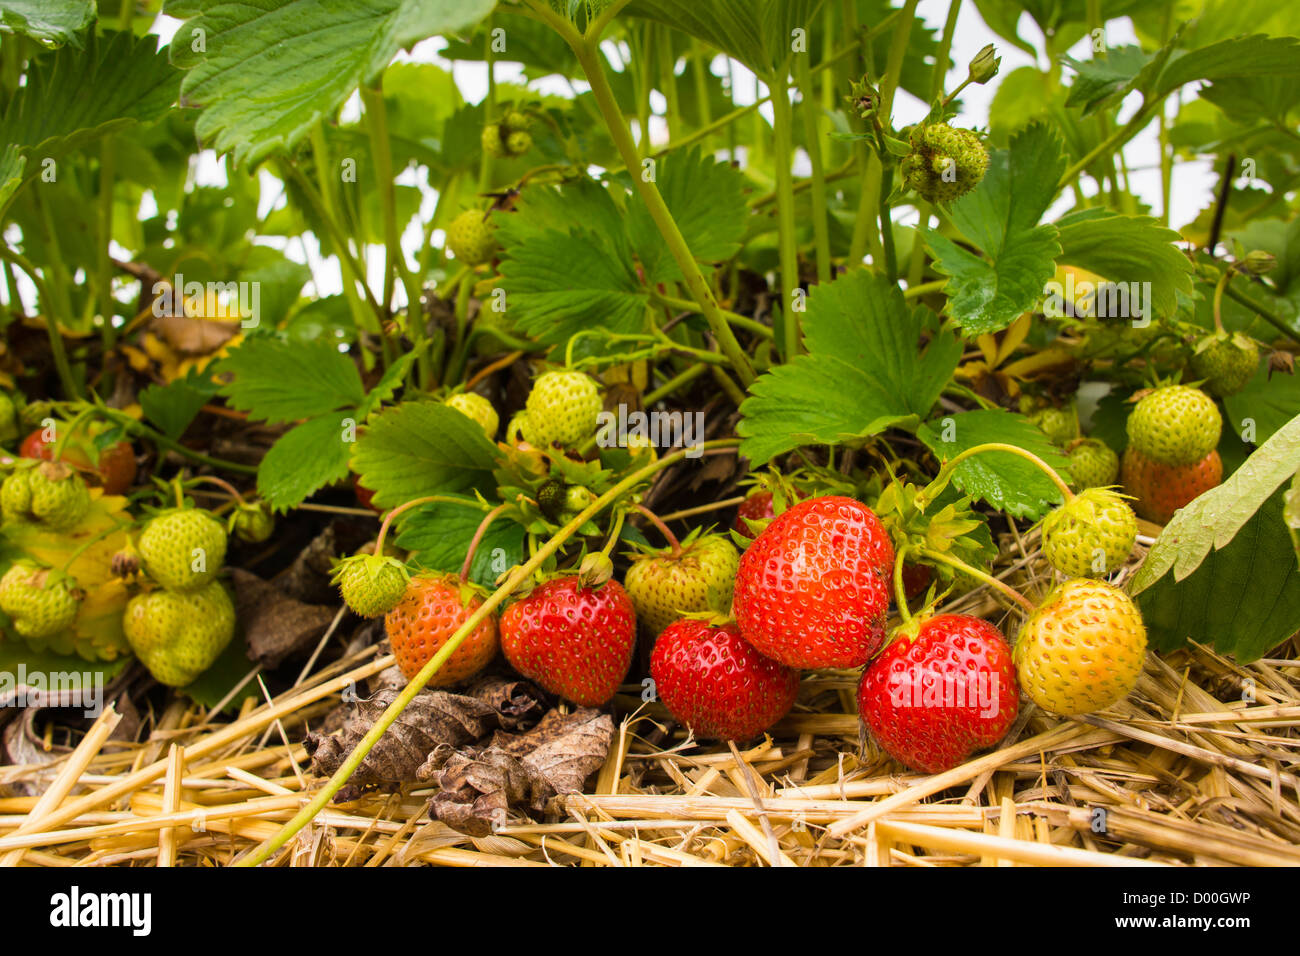 Eine Mischung aus roten und grünen Erdbeeren ruht auf Stroh. Stockfoto